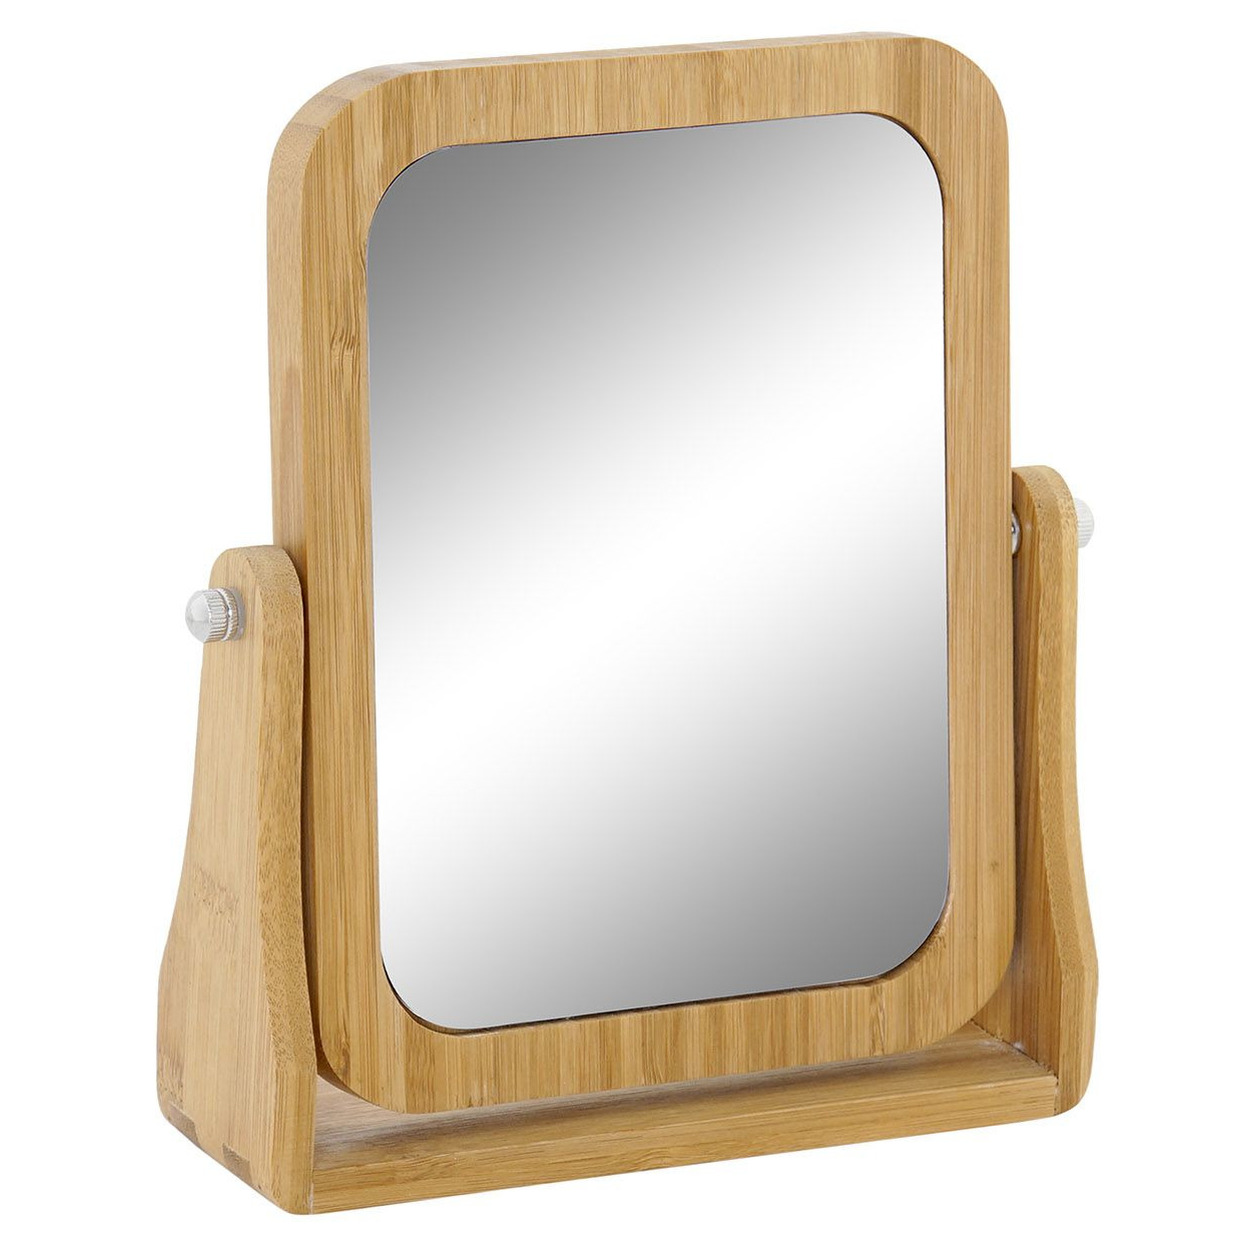 Badkamerspiegel - make-up spiegel bamboe hout 22 x 6 x 22